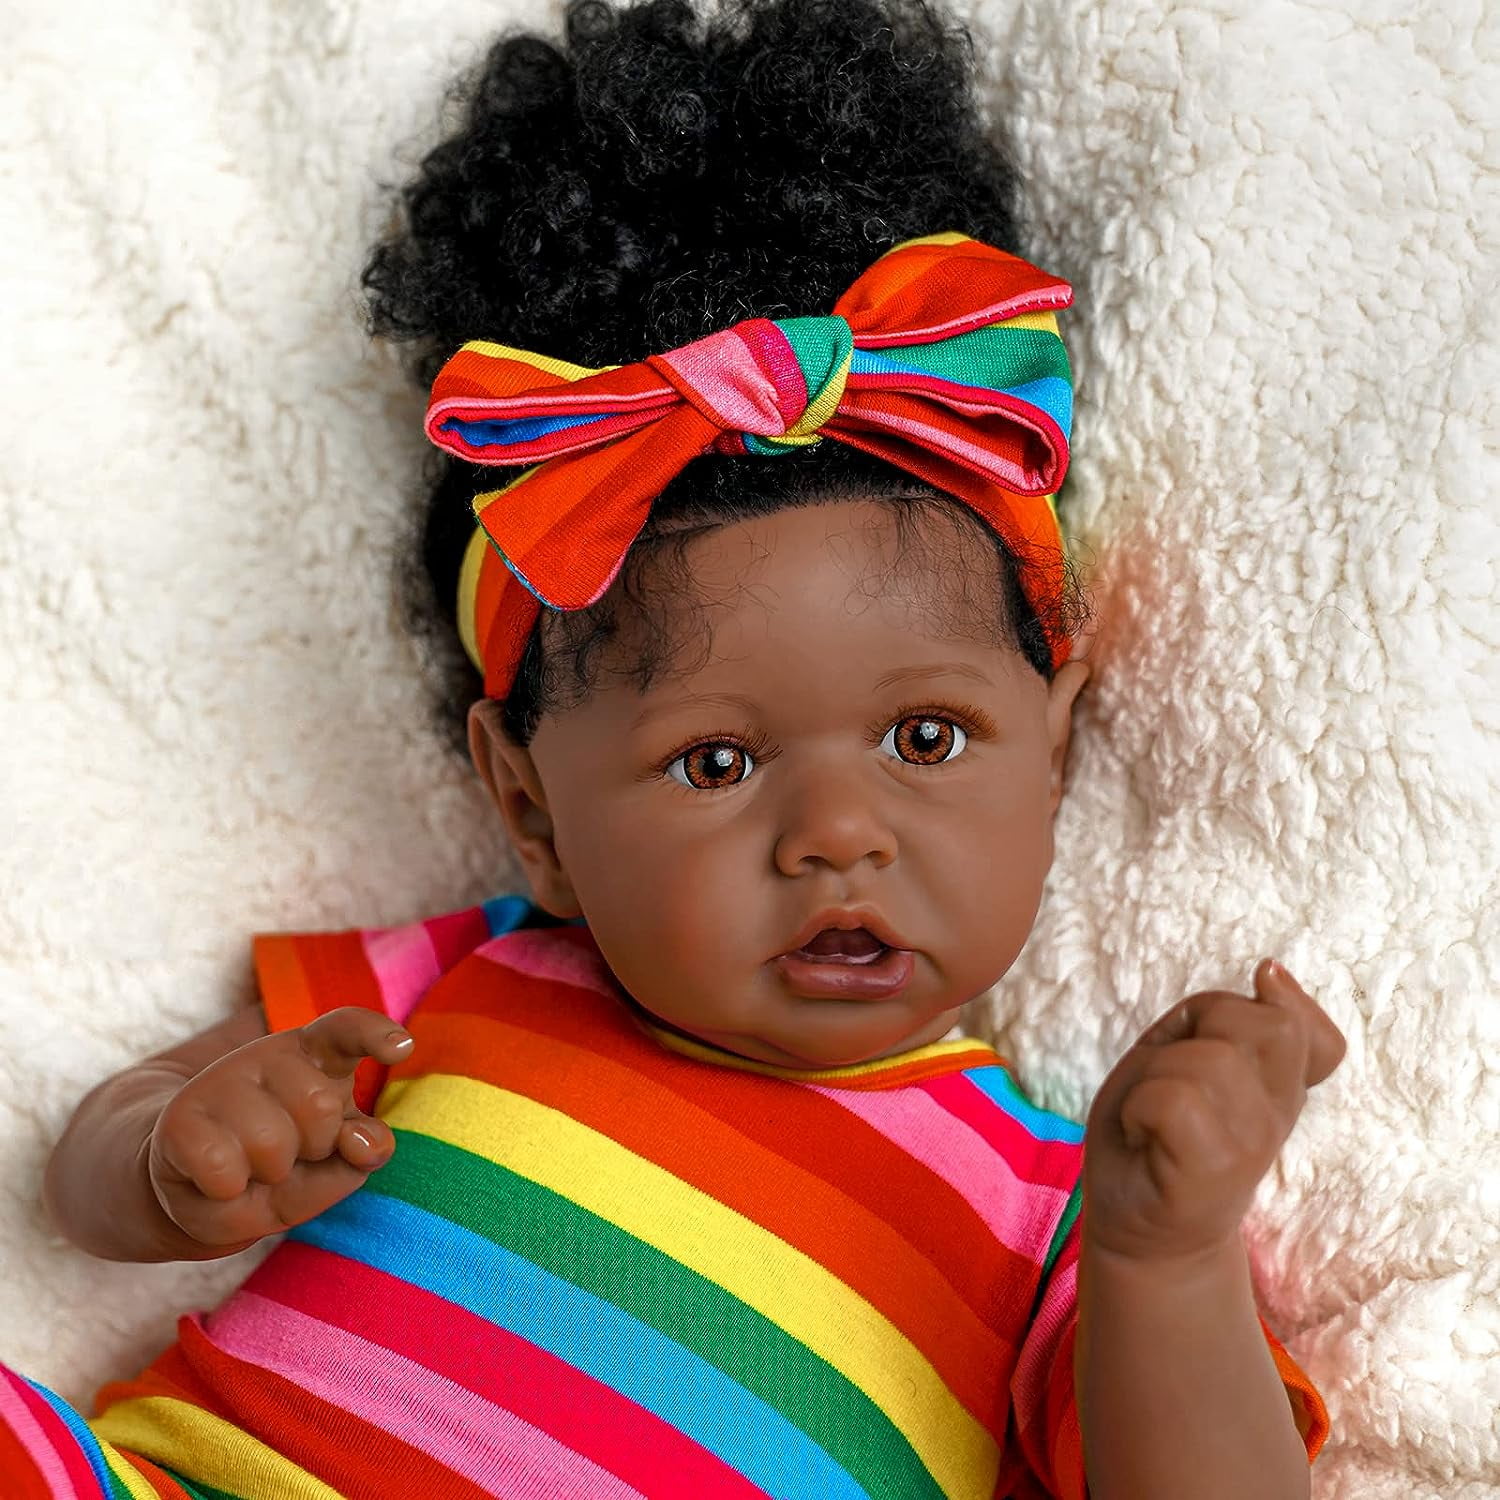 JIZHI Lifelike Reborn Baby Dolls Black - 17-Inch Baby-Soft Body curls  Realistic-Newborn Baby Dolls African American Real Life Ba